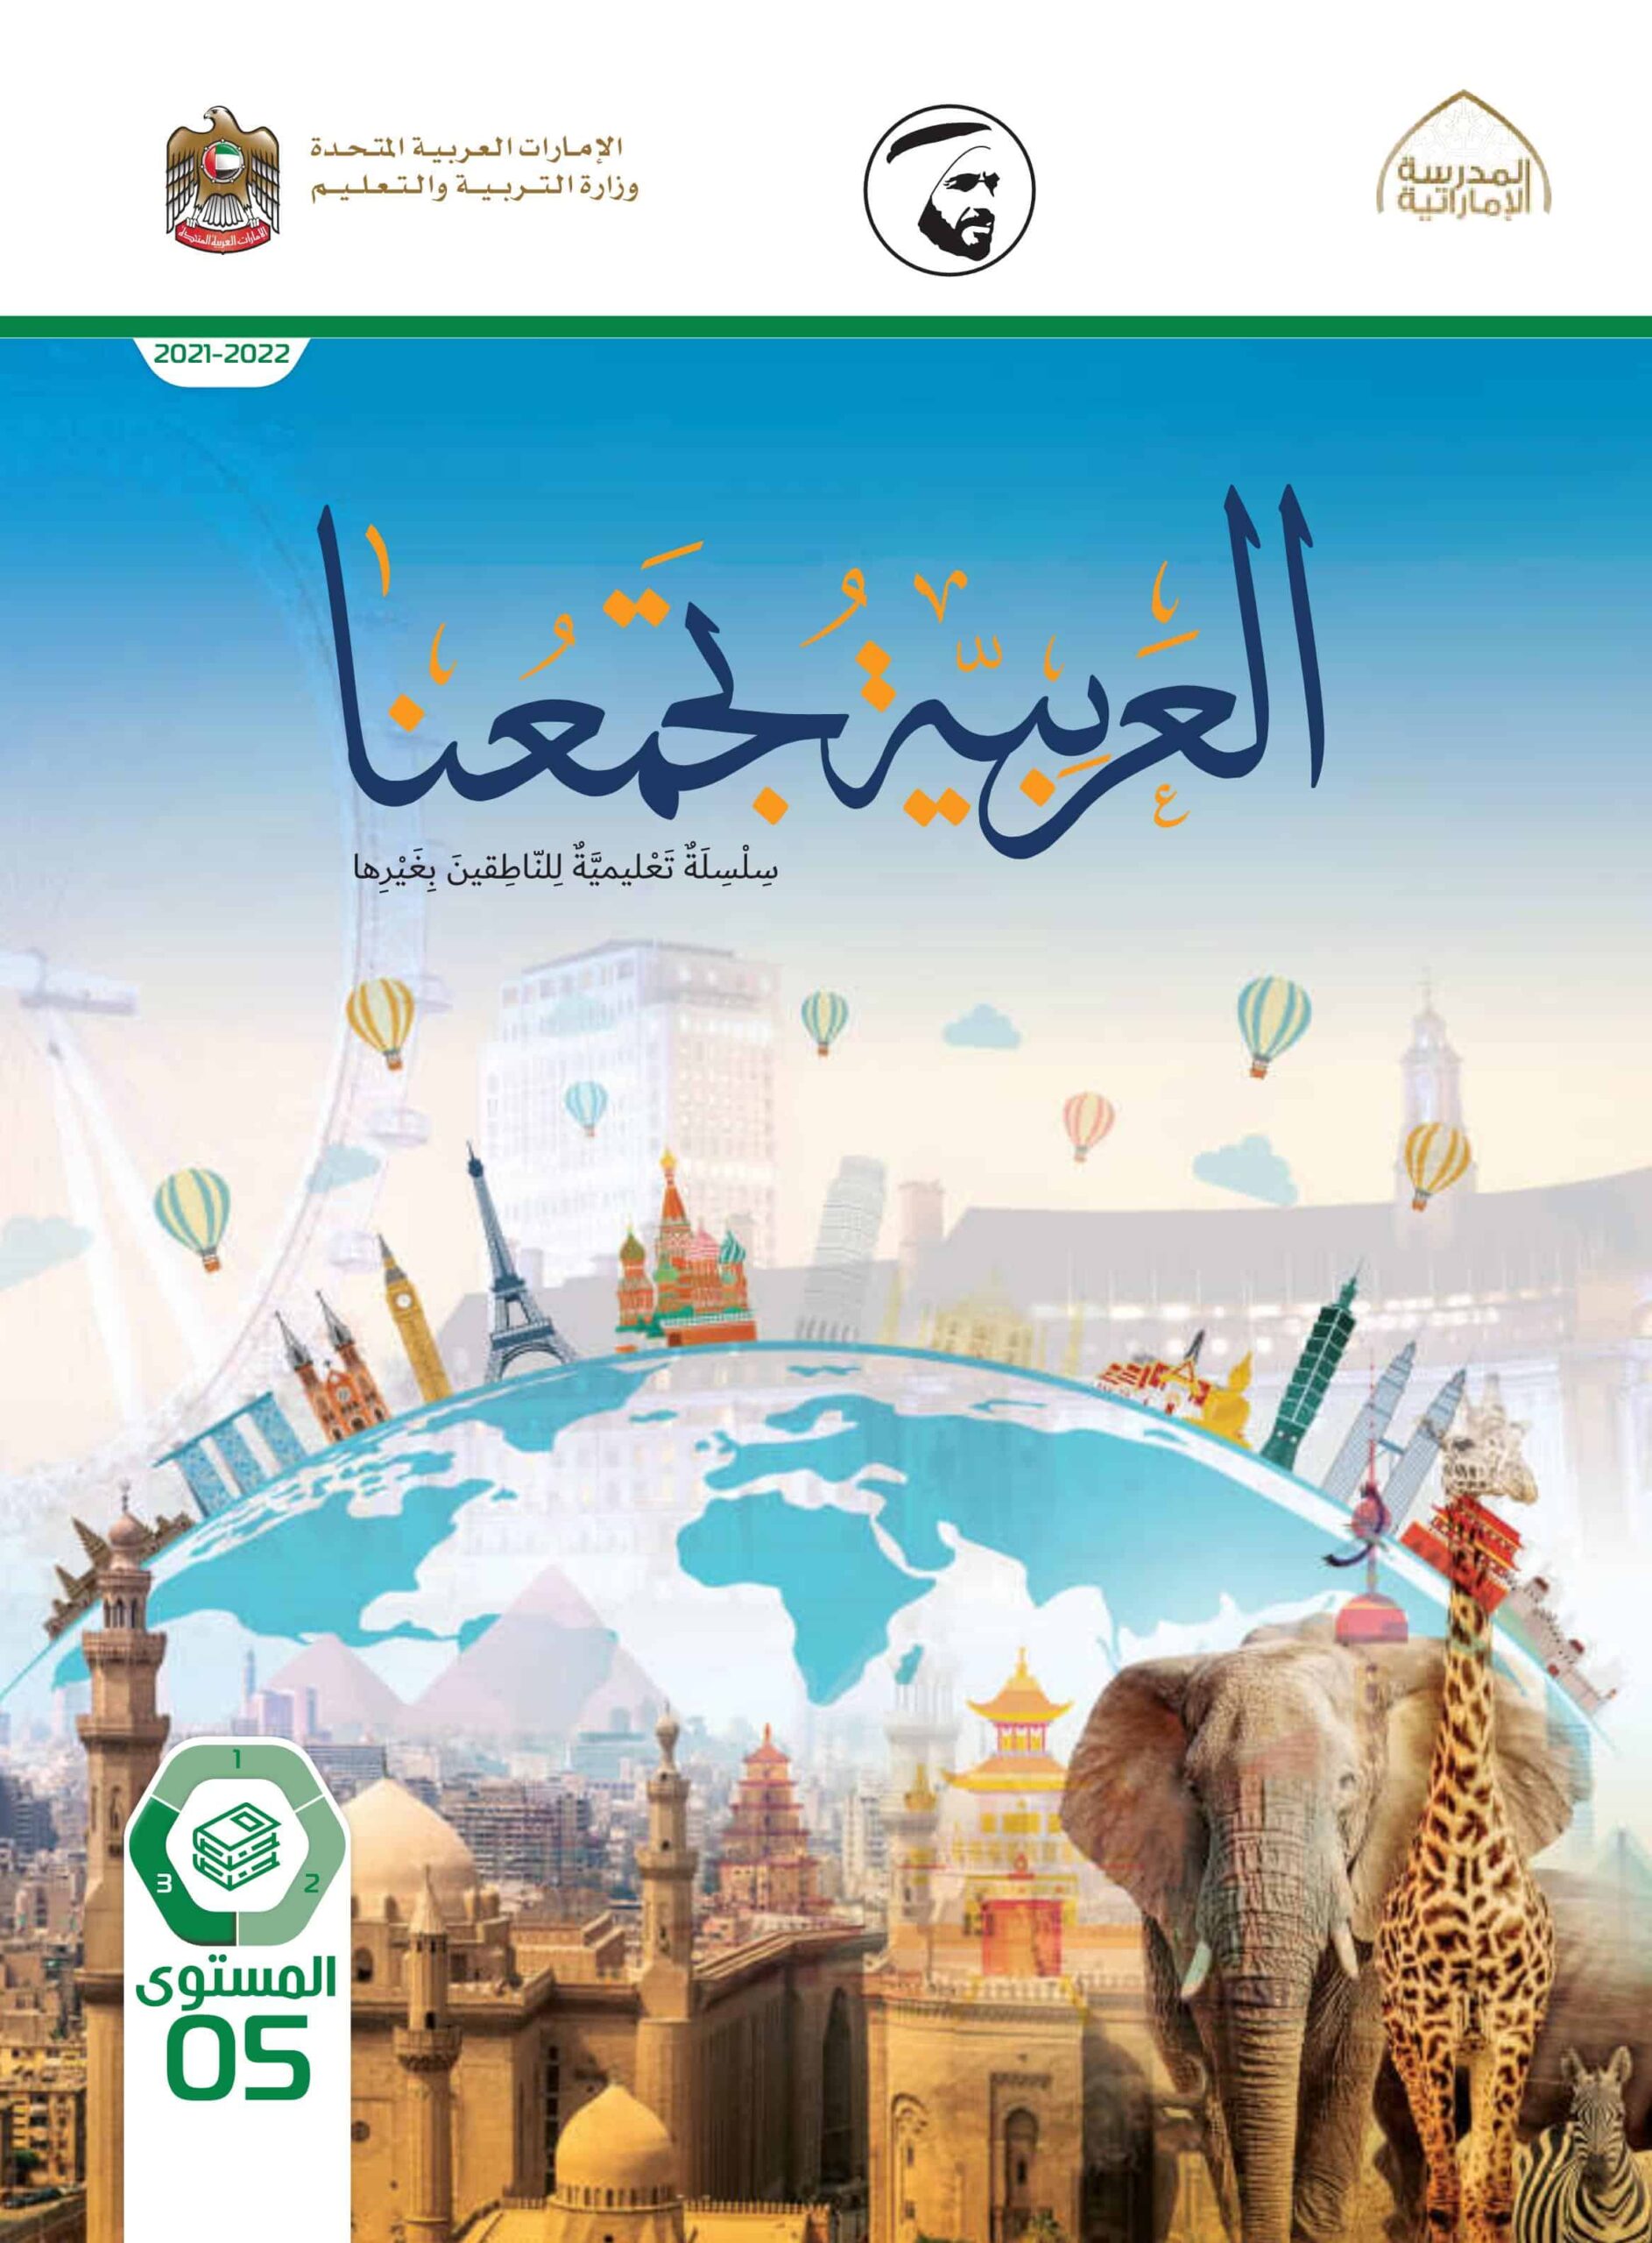 كتاب الطالب لغير الناطقين بها اللغة العربية الصف الخامس الفصل الدراسي الثالث 2021-2022